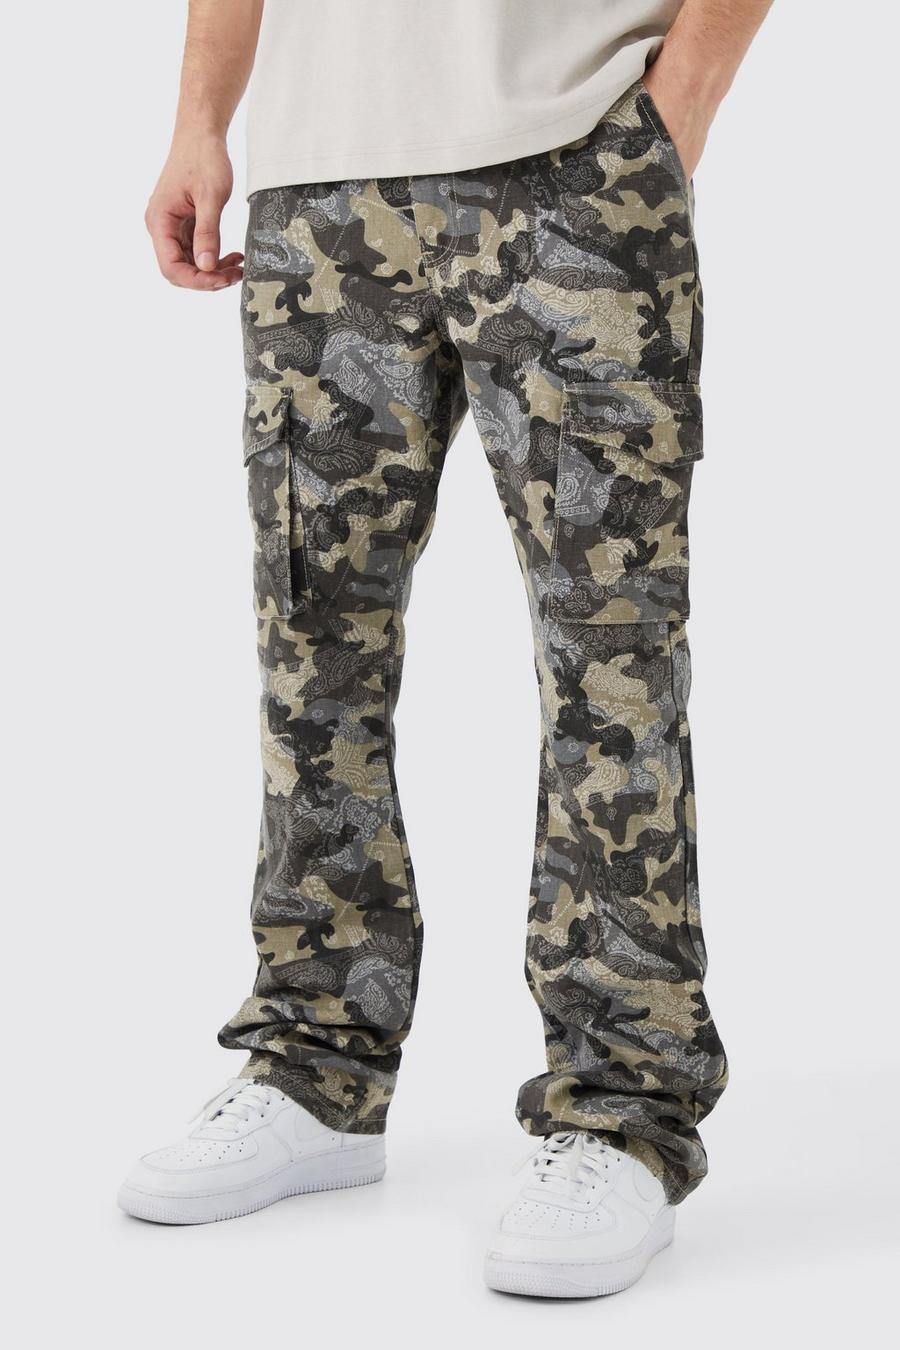 Pantaloni Cargo Tall Slim Fit a zampa in fantasia militare con inserti in fantasia a bandana, Light grey grigio